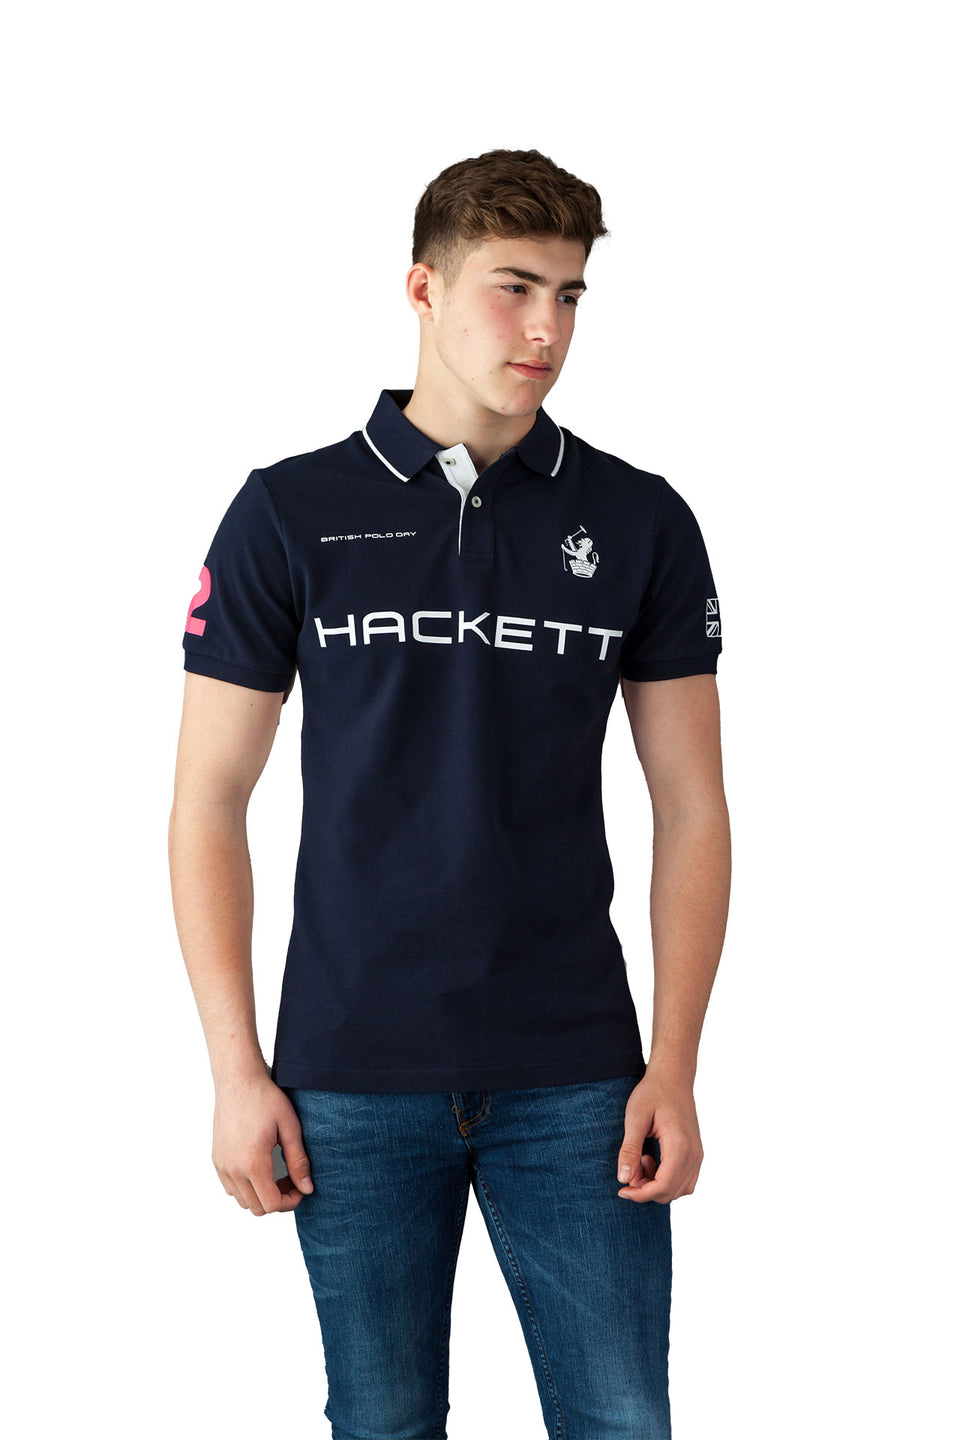 Hackett - British Polo Day Navy Polo Shirt - Camden Connaught